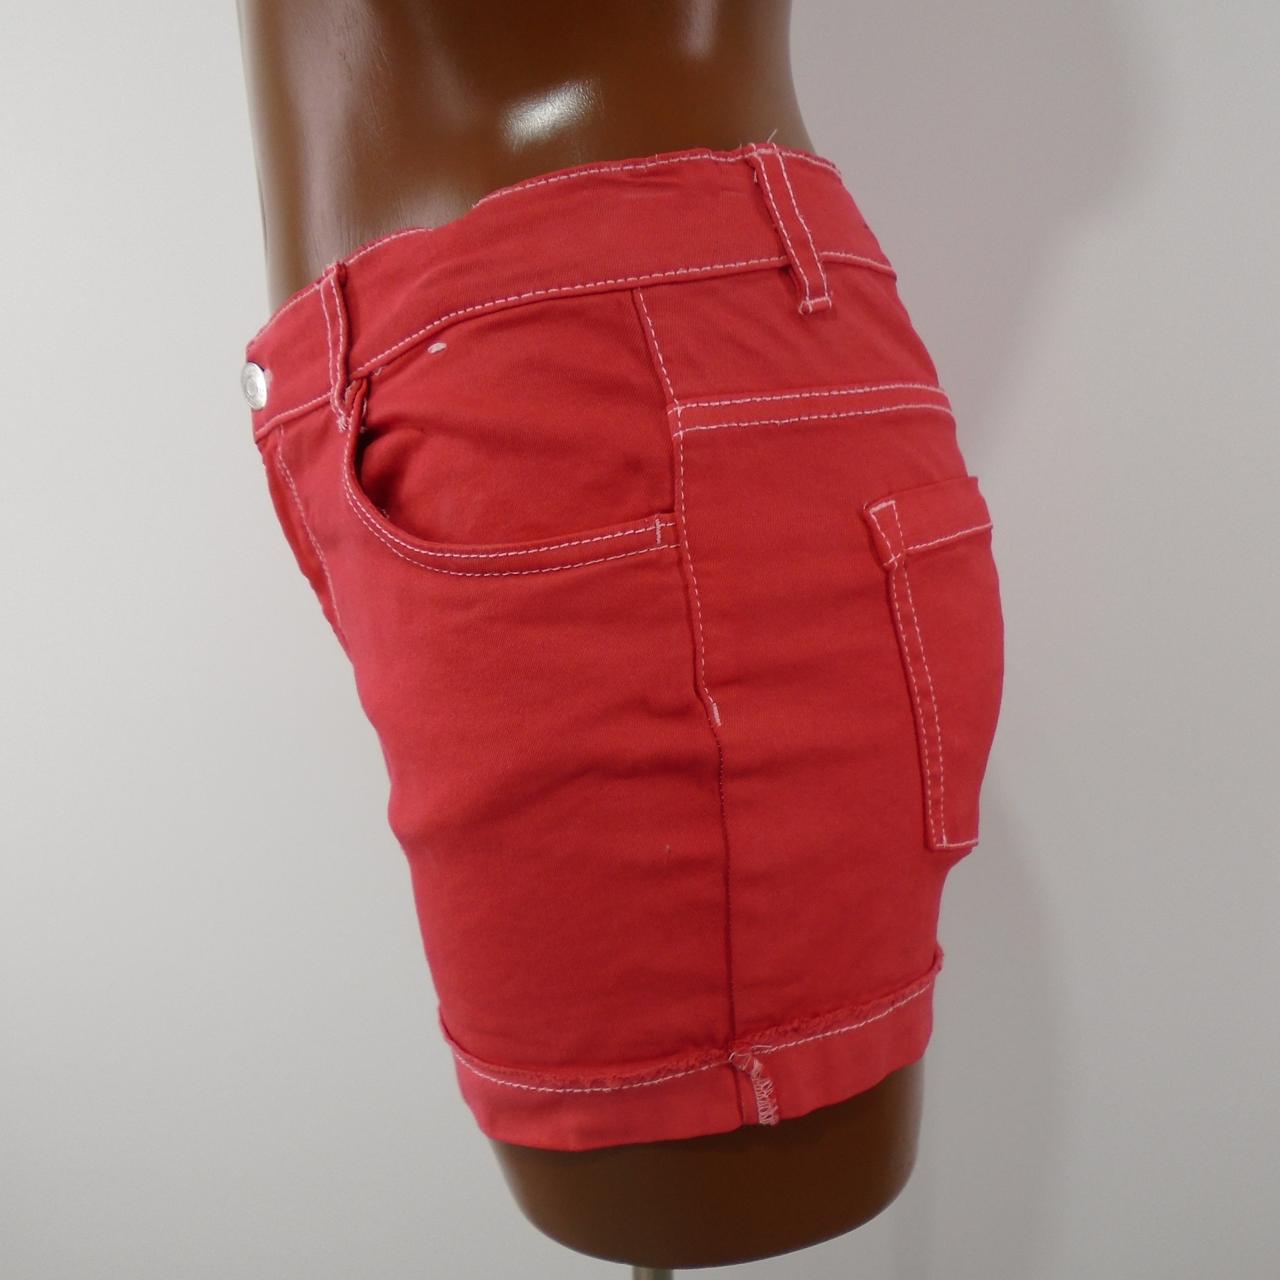 Pantalones cortos de mujer de mezclilla.  Rojo.  S. Usado.  Bien